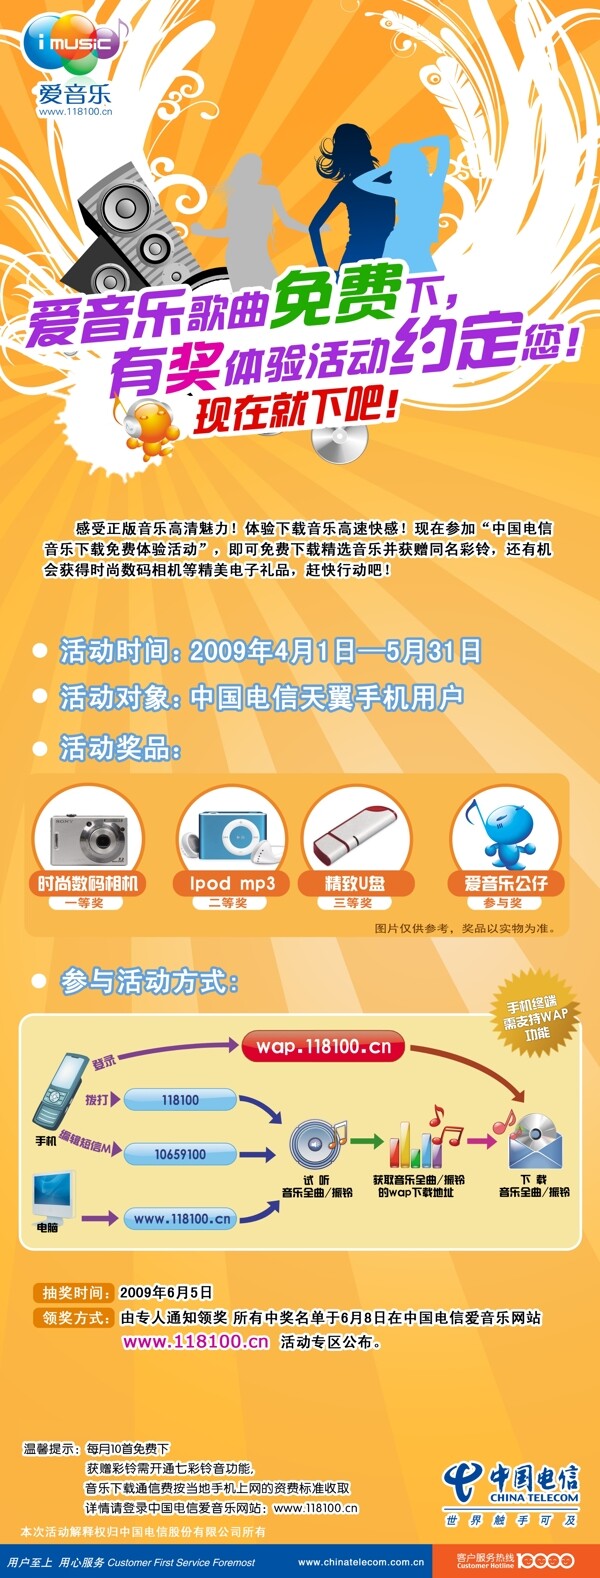 中国电信爱音乐有奖体验活动x展架图片